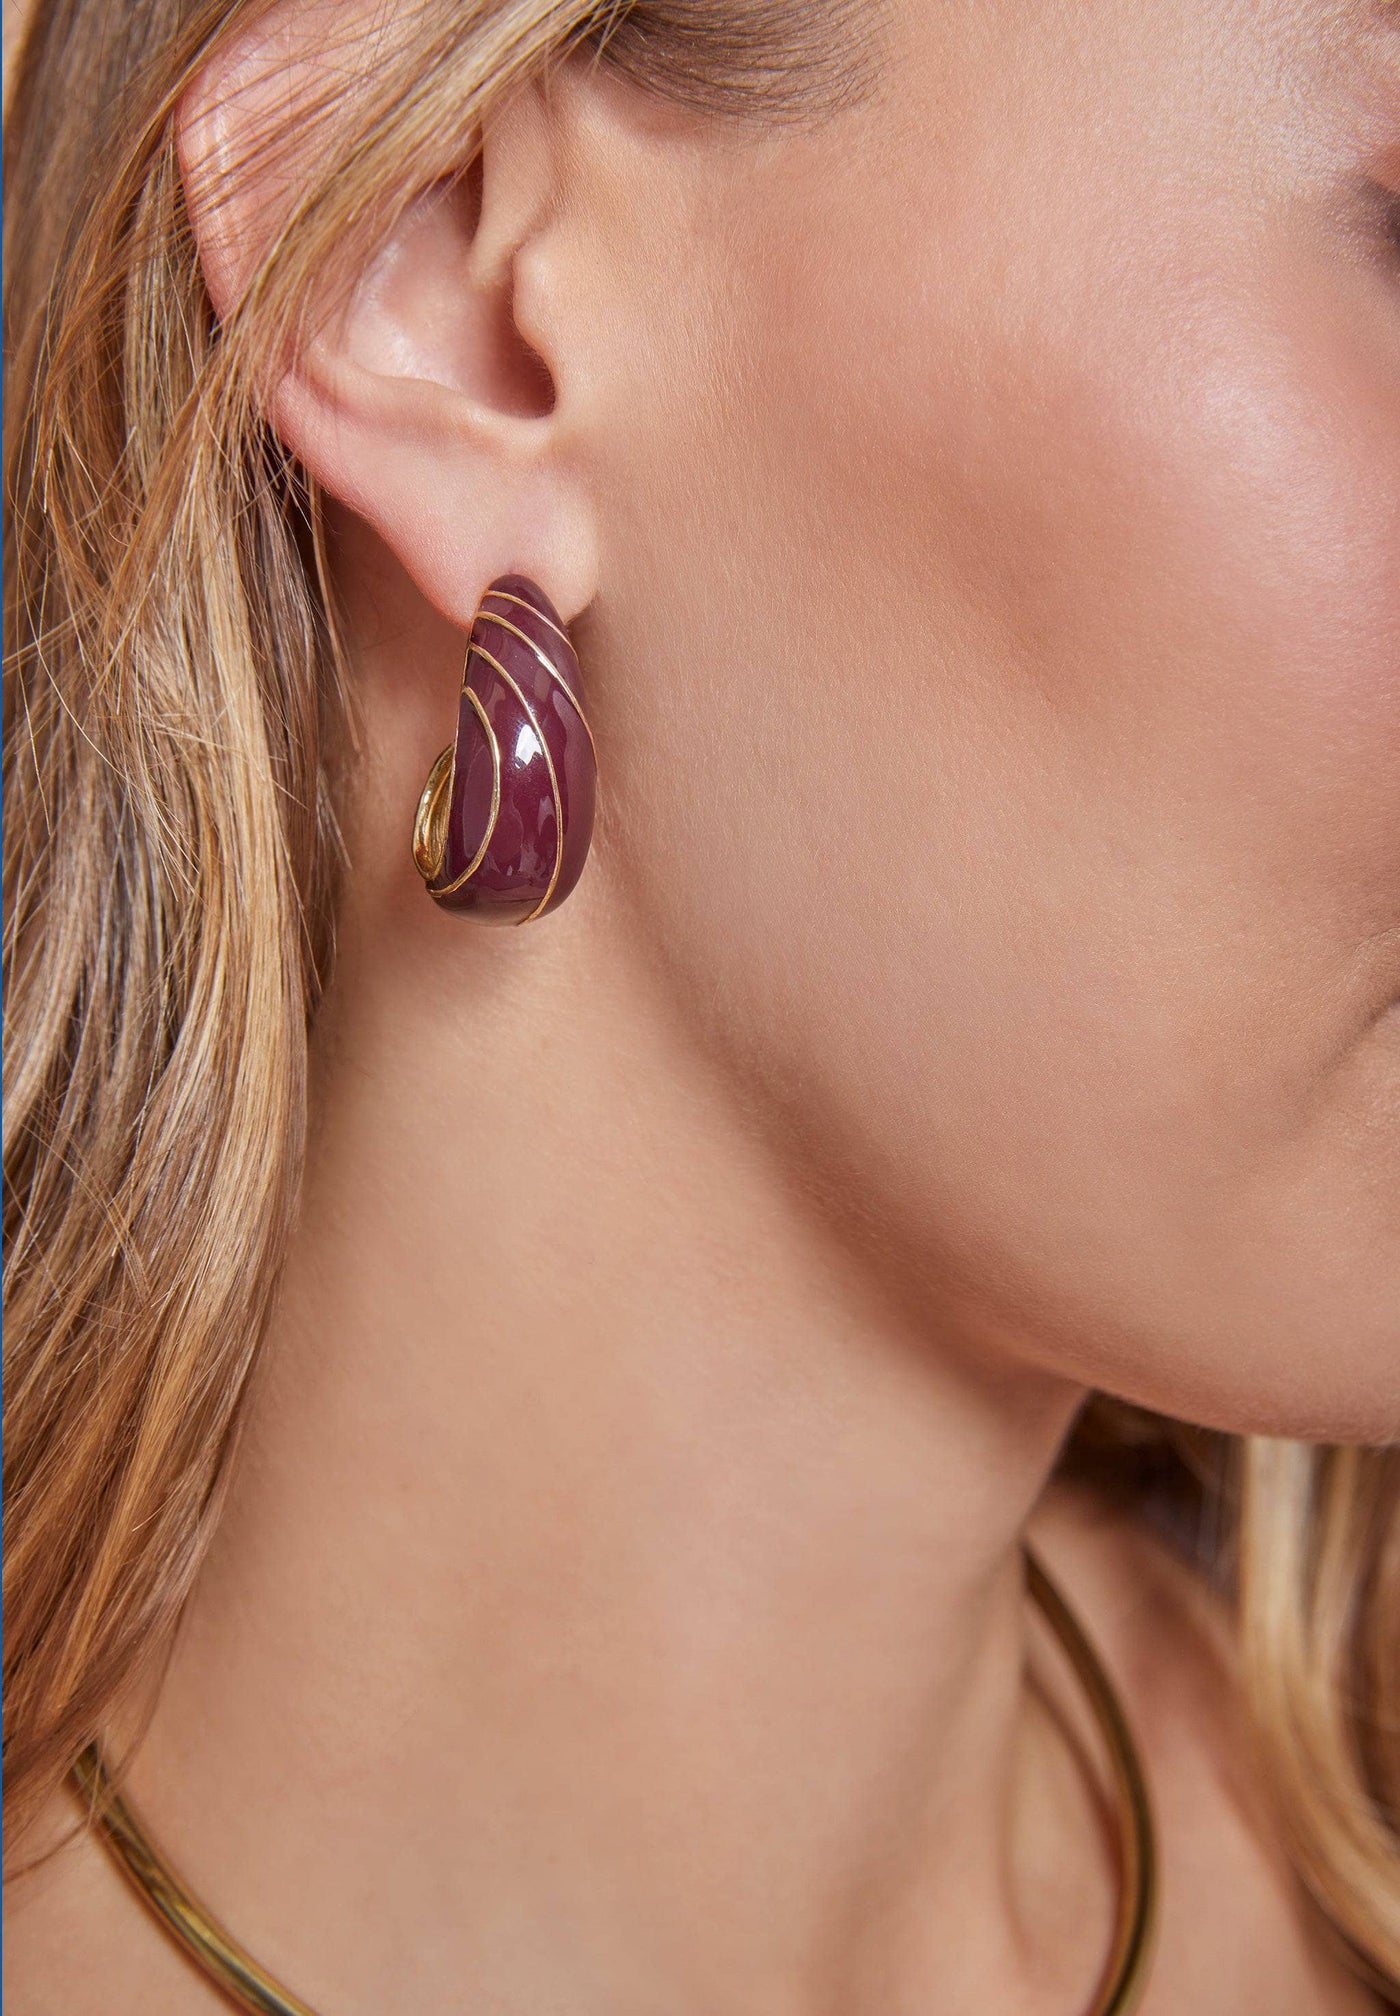 HEIDI DAUS®"The Perfect Wave" Enamel Hoop Earrings